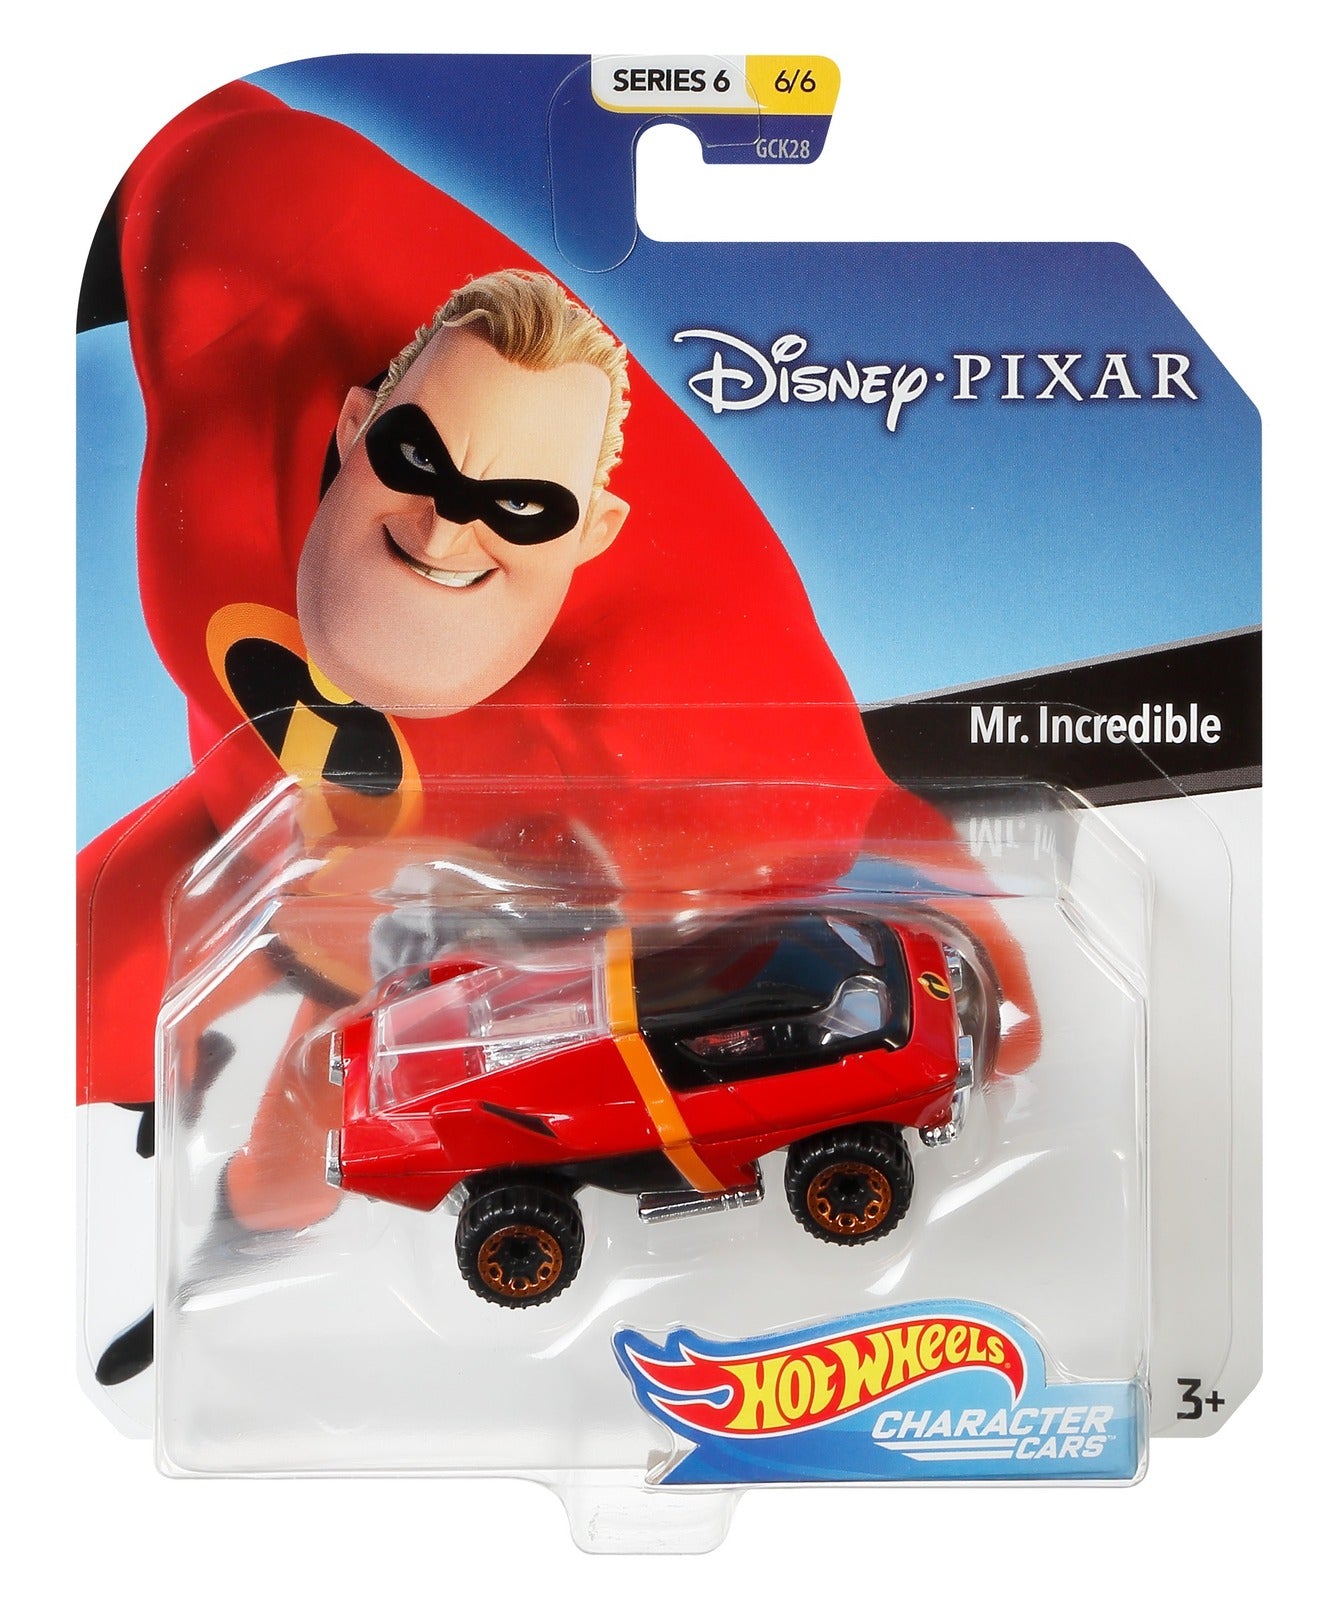 Hot Wheels Disney Pixar Character Cars - Mr Incredible